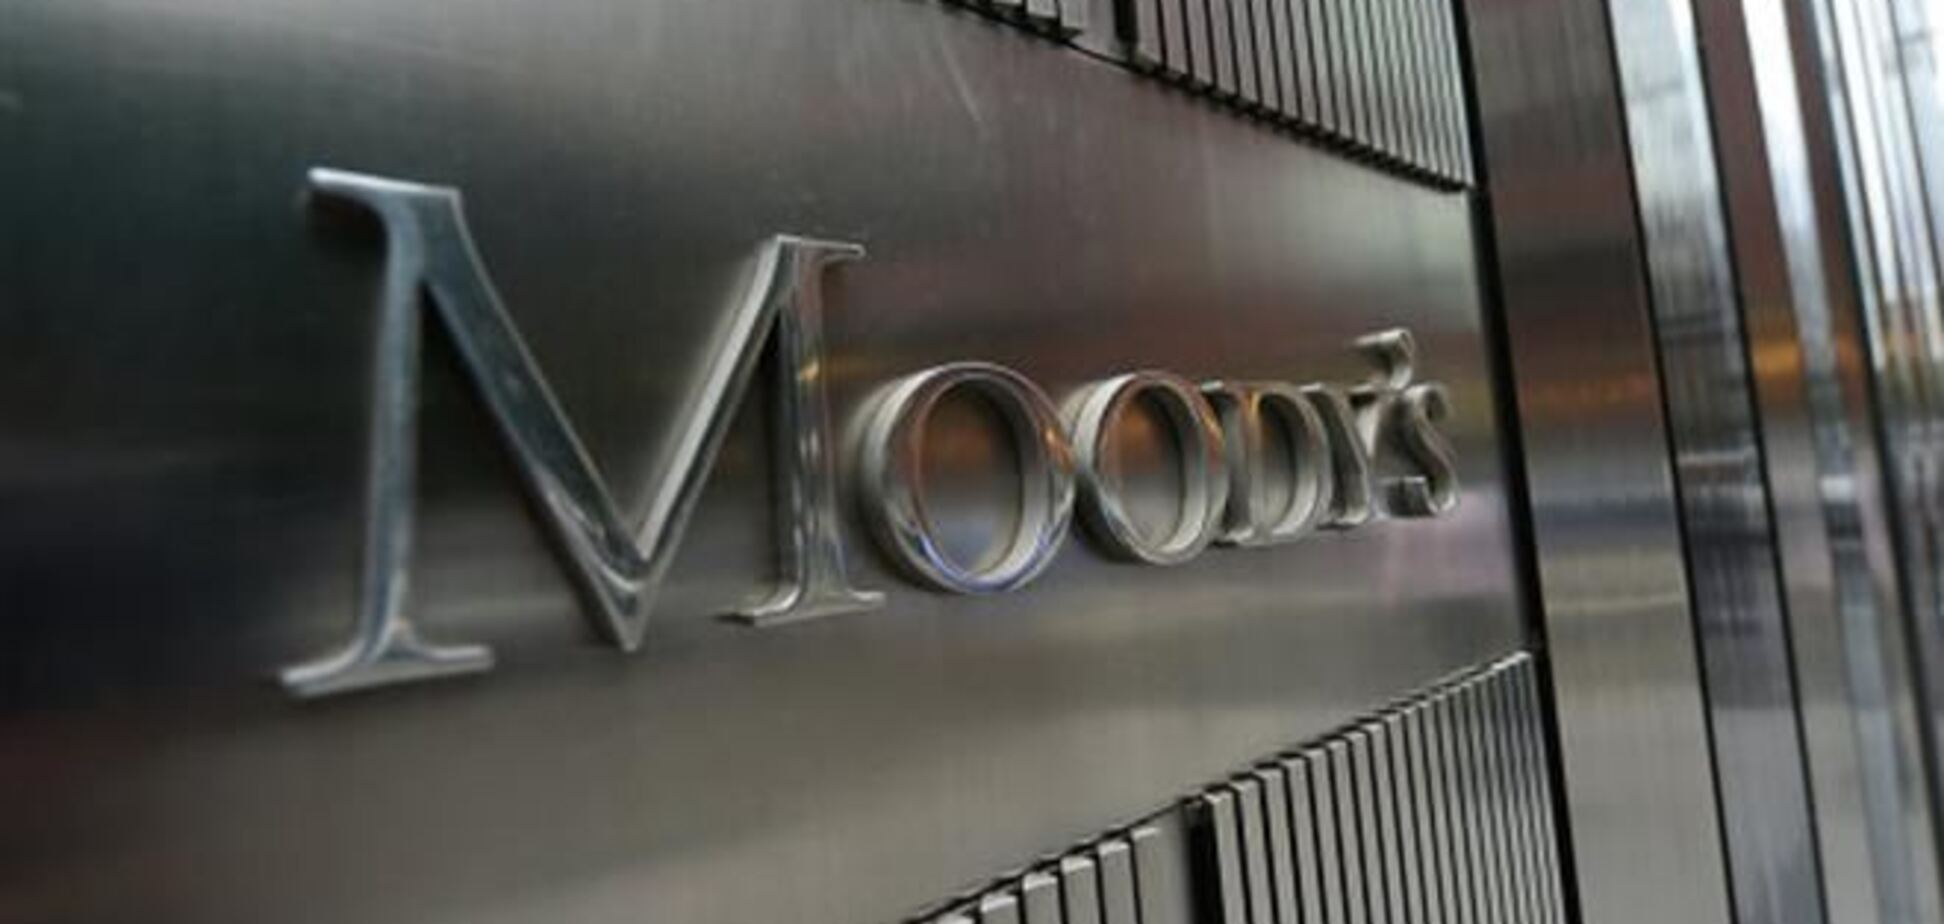 Moody's снизило кредитный рейтинг Украины